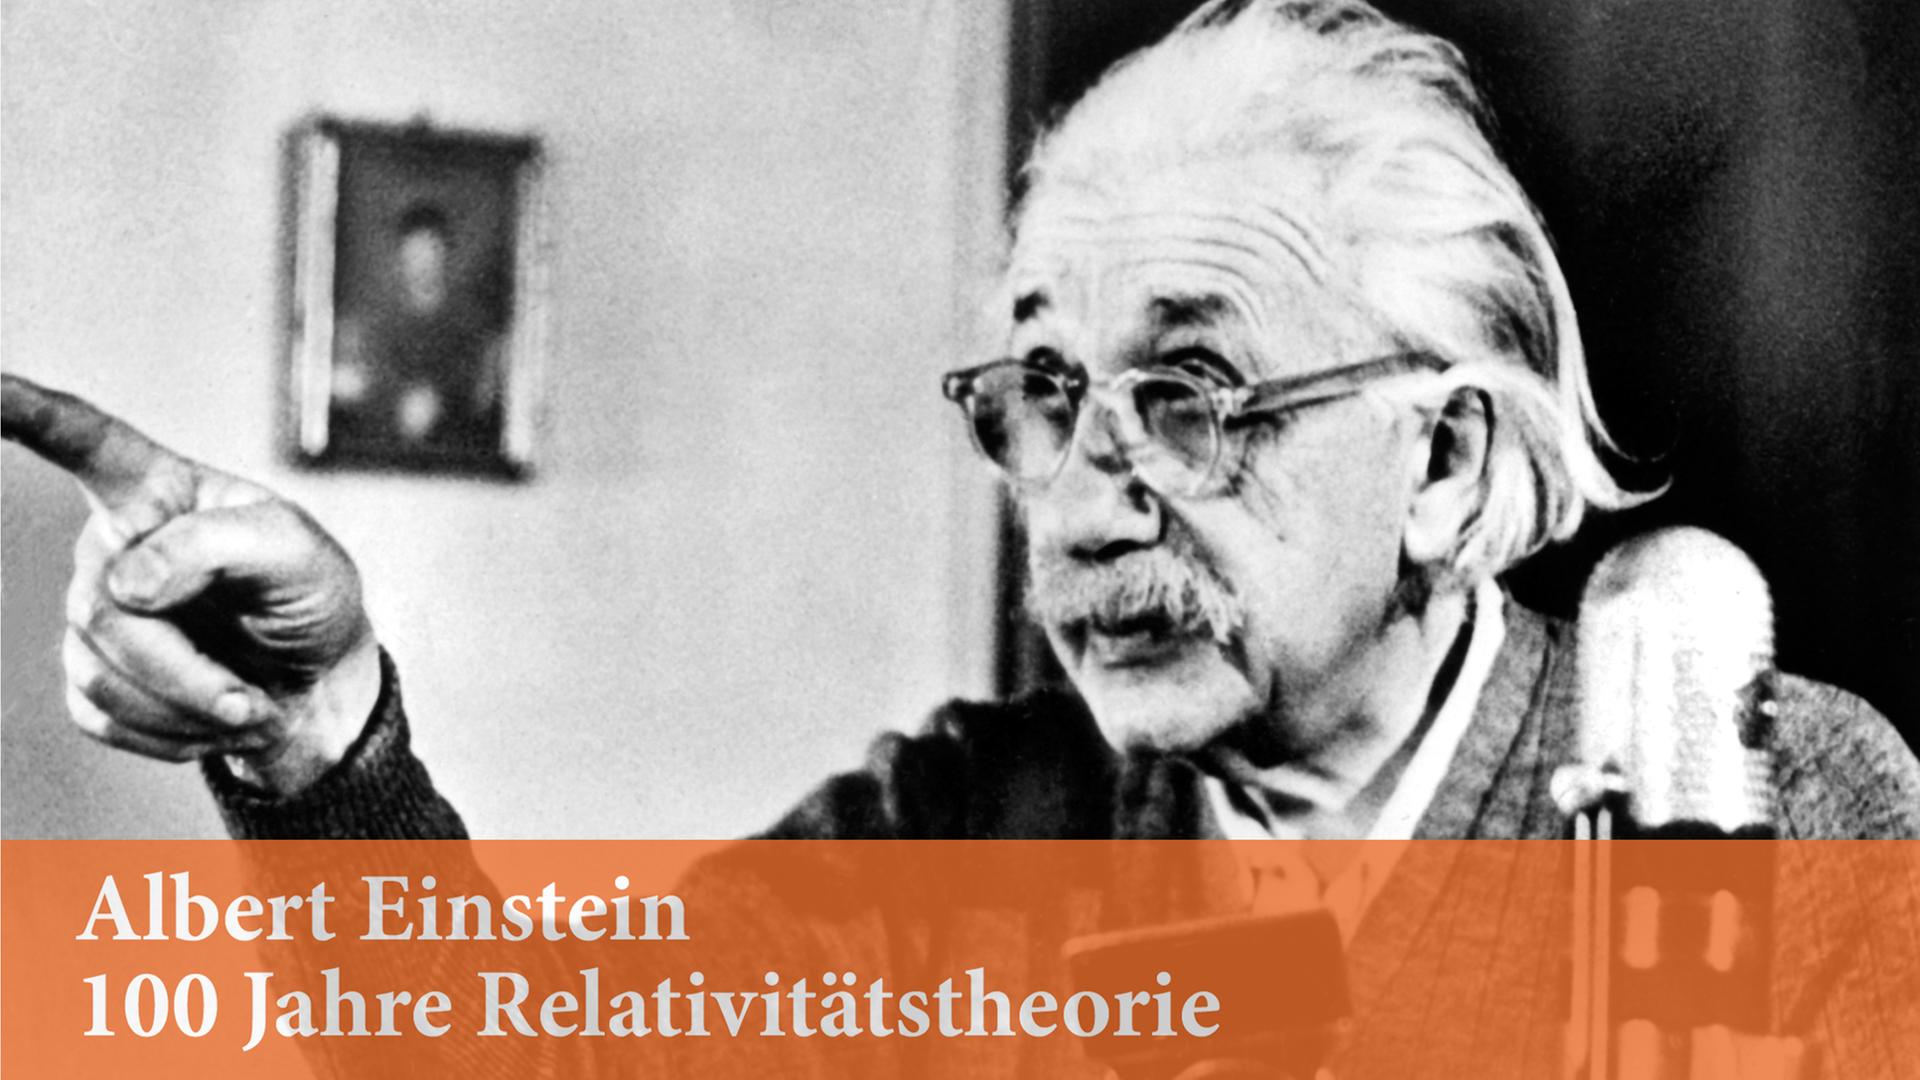 Albert Einstein spricht in einer berühmten Rede im Februar 1950 zur Frage des Atom-Wettrüstens.